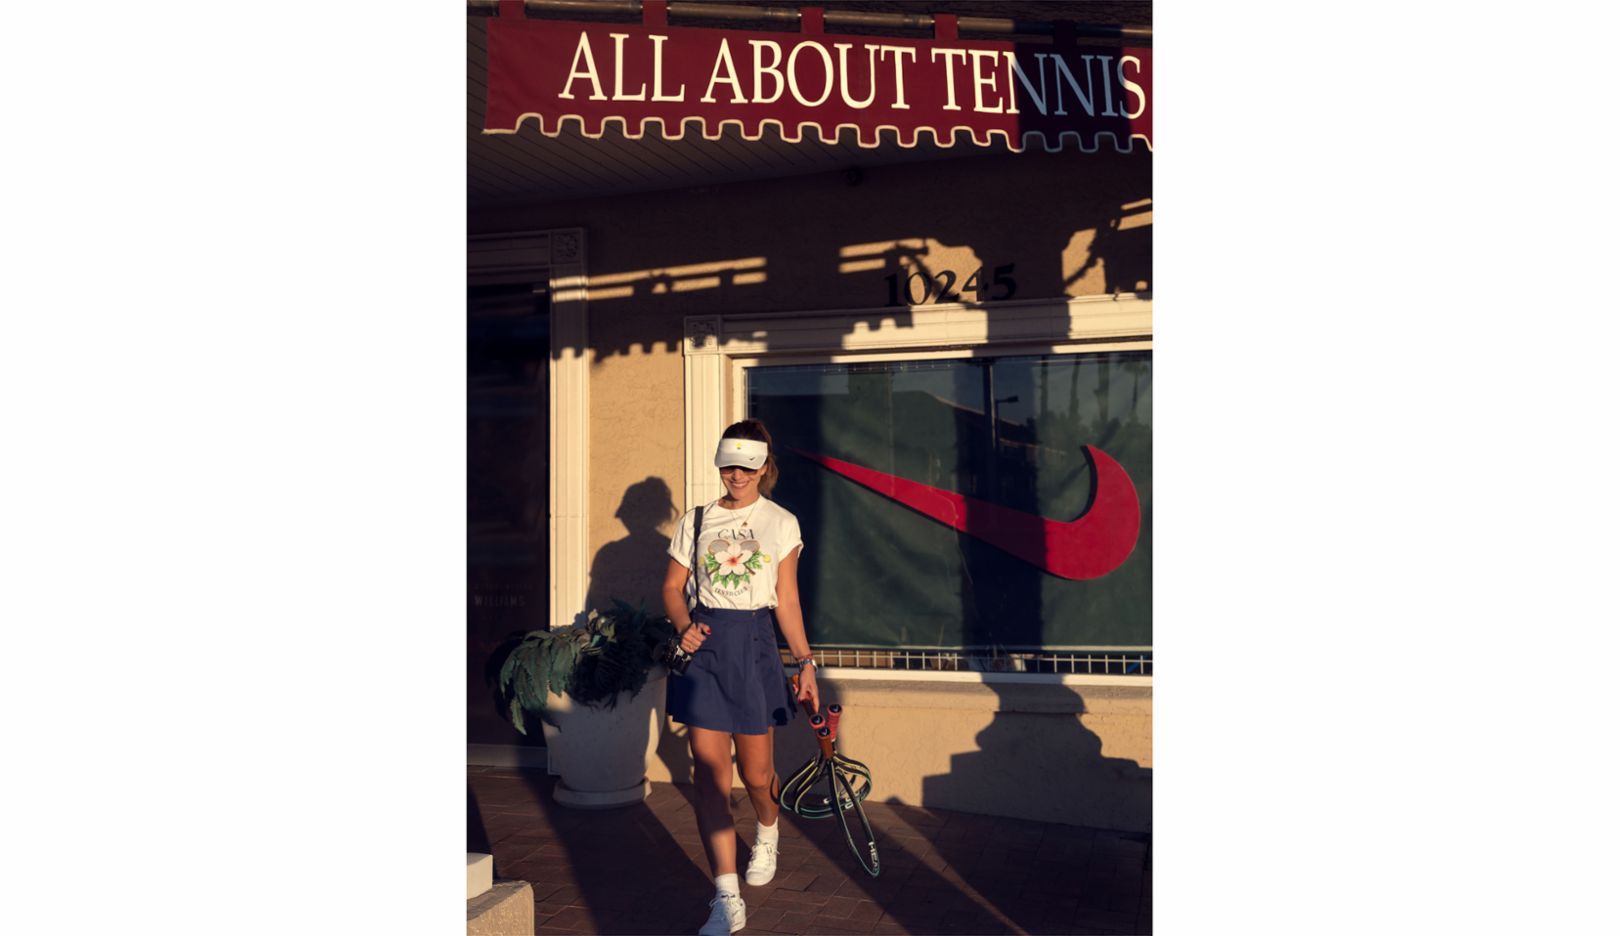 Радка Лейтмериц перед своим любимым теннисным магазином в Скоттсдейле, штат Аризона. «Мне нравится рассматривать там все. Например, когда натягивают ракетки». Свои наряды она обычно находит в Интернете, преимущественно винтажные. Фотохудожница считает, что теннисистки 80-х и 90-х годов сильнее выражали свою индивидуальность в одежде, поэтому она коллекционирует теннисные юбки тех десятилетий. 